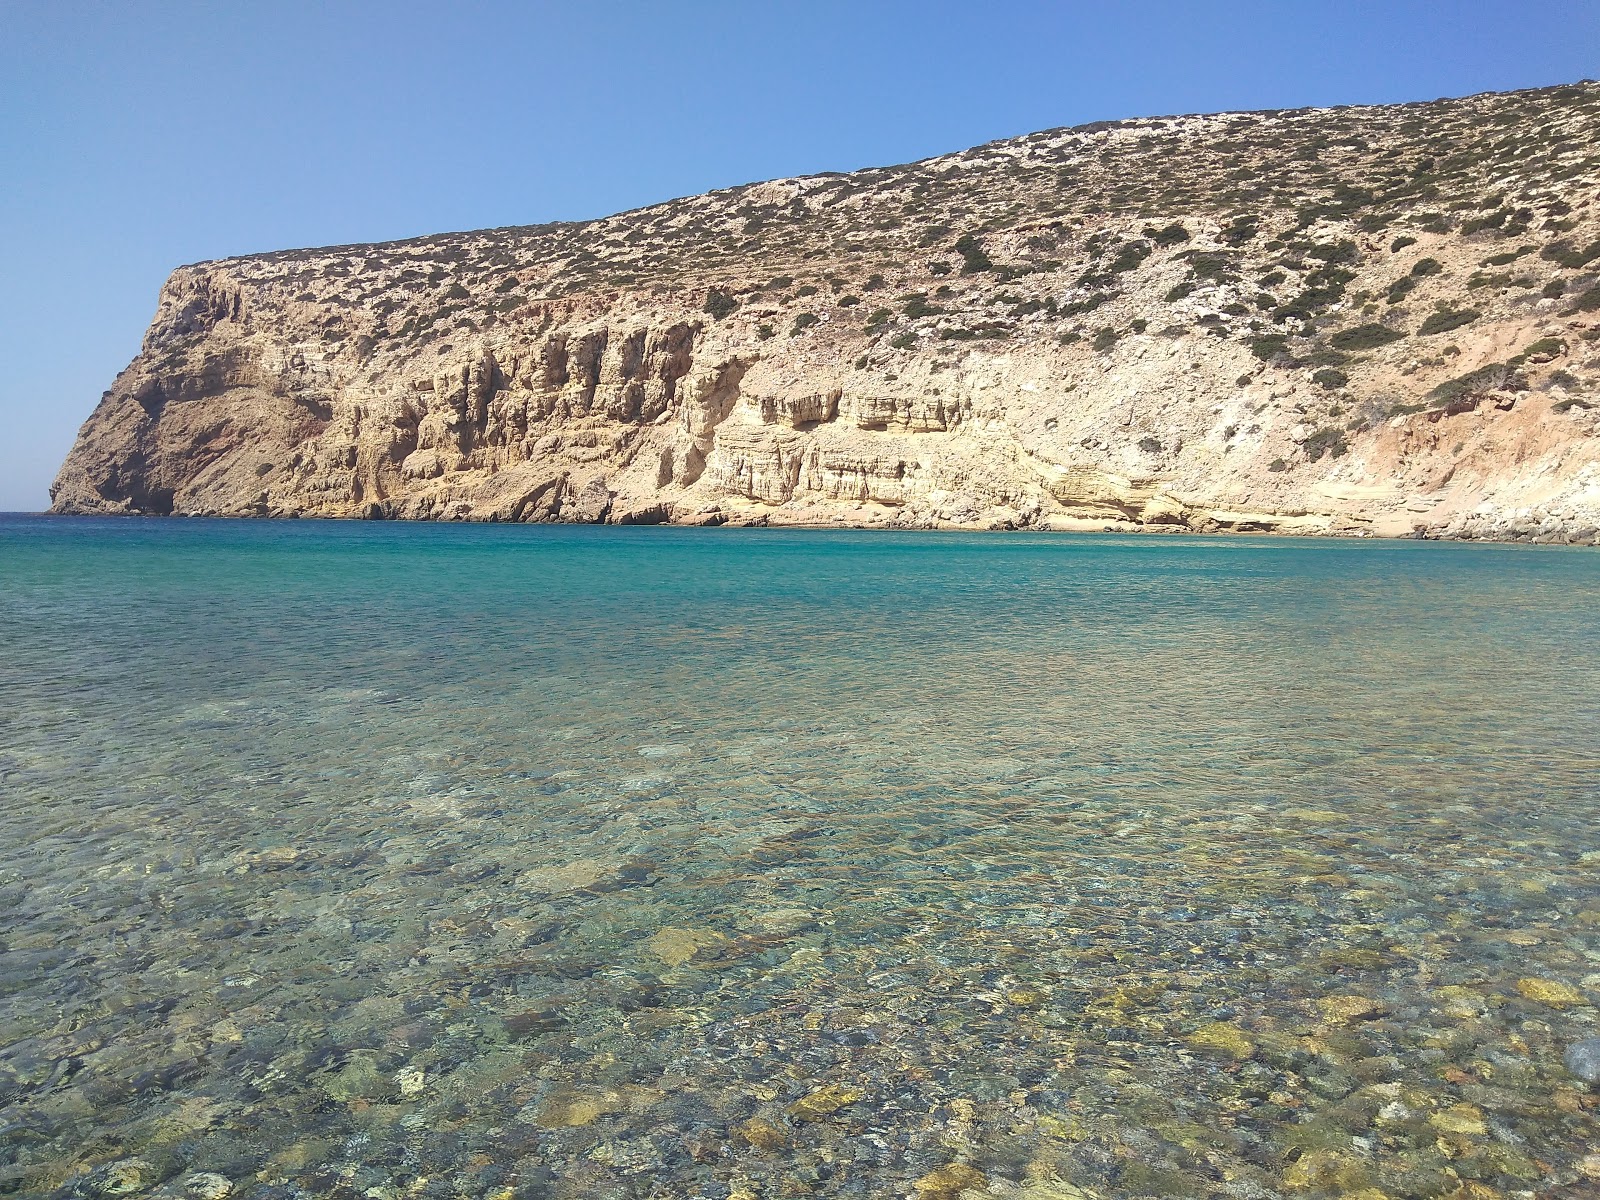 Foto de Helatros Beach Kasos Greece ubicado en área natural